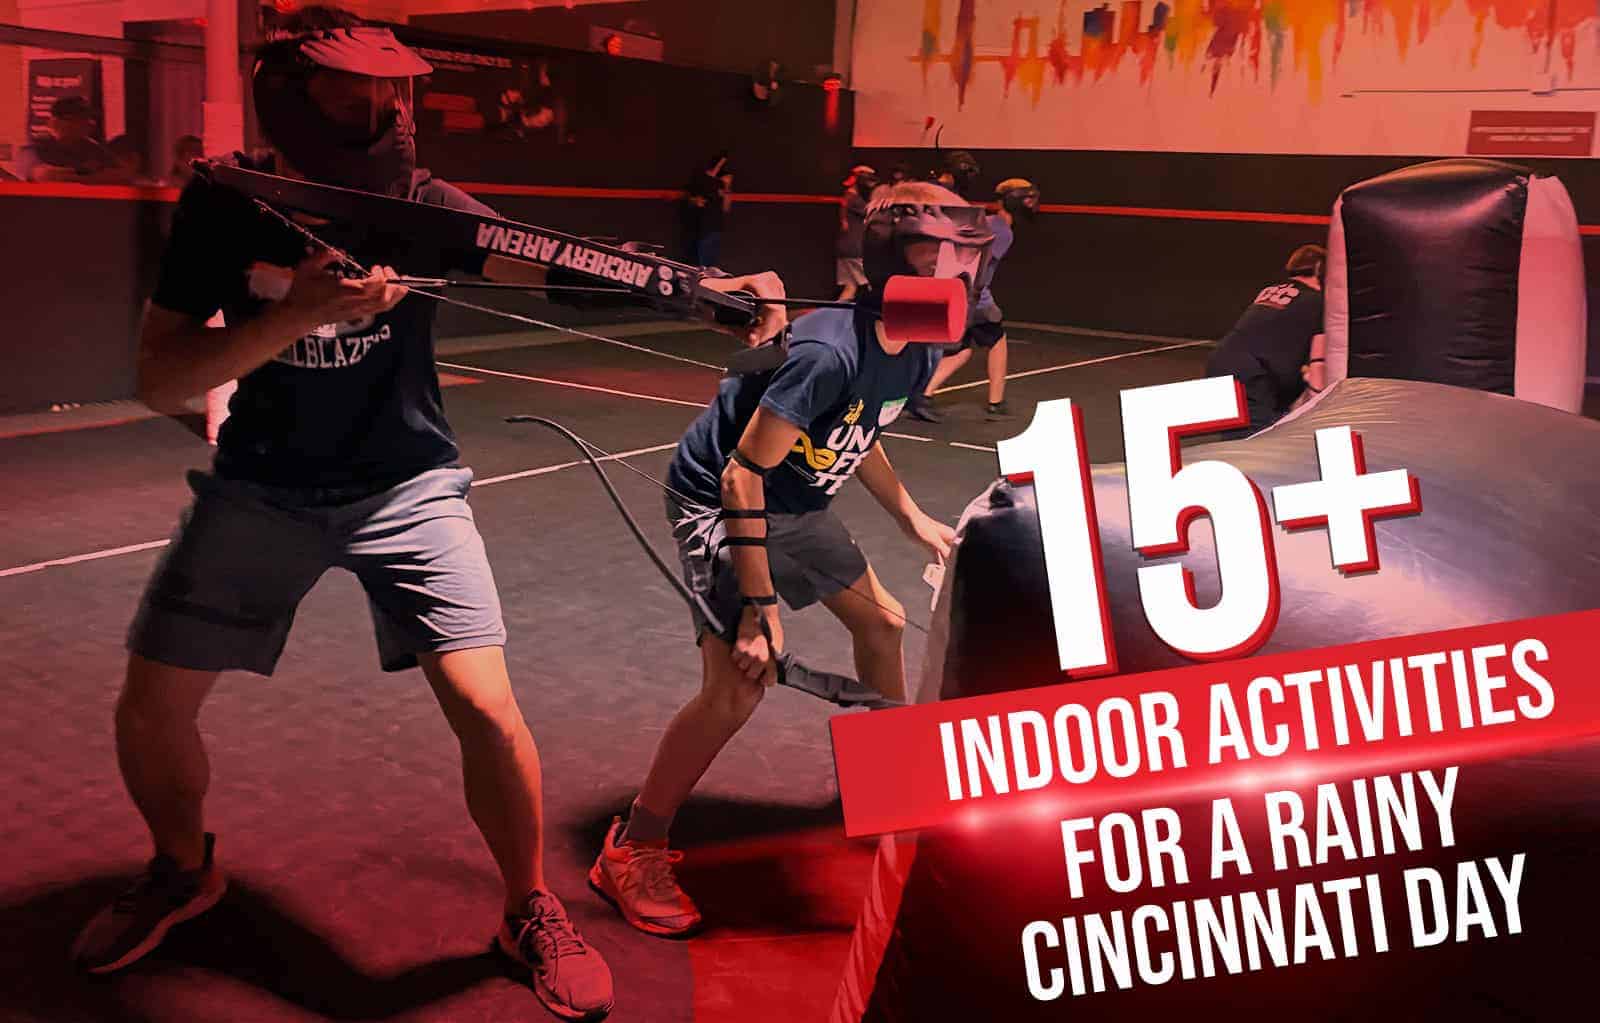 15+ Indoor Activities For A Rainy Cincinnati Day